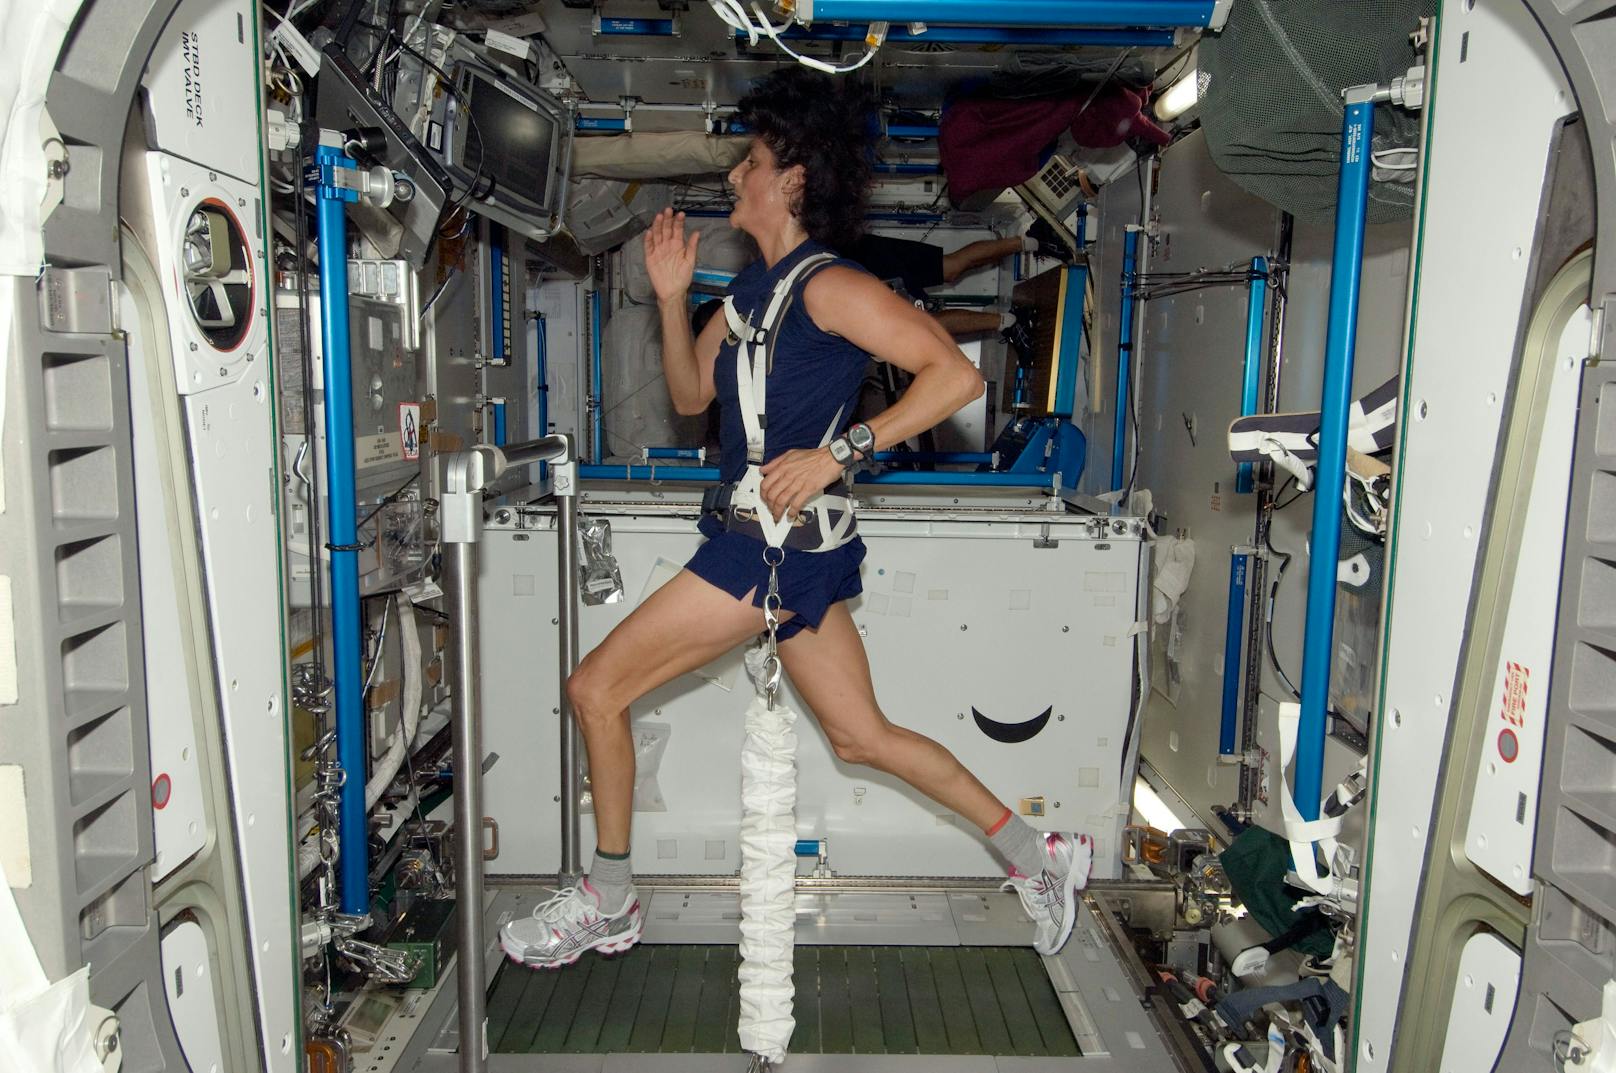 <strong>Auf dem Laufband trainieren – im Weltall!&nbsp;</strong>Wusstest du, dass ein Astronaut oder eine Astronautin beim Trainieren auf dem Laufband gern mal mehrere Zehntausend Kilometer vorankommt? Schließlich ist die ISS mit einer Geschwindigkeit von 28.000 Kilometern pro Stunde unterwegs. "Gerade eben 16.300 km auf dem Laufband gelaufen (35 Min mit 28’000 km/h)", twittere der Astronaut Alexander Gerst im Oktober 2014 über das Training auf der ISS.